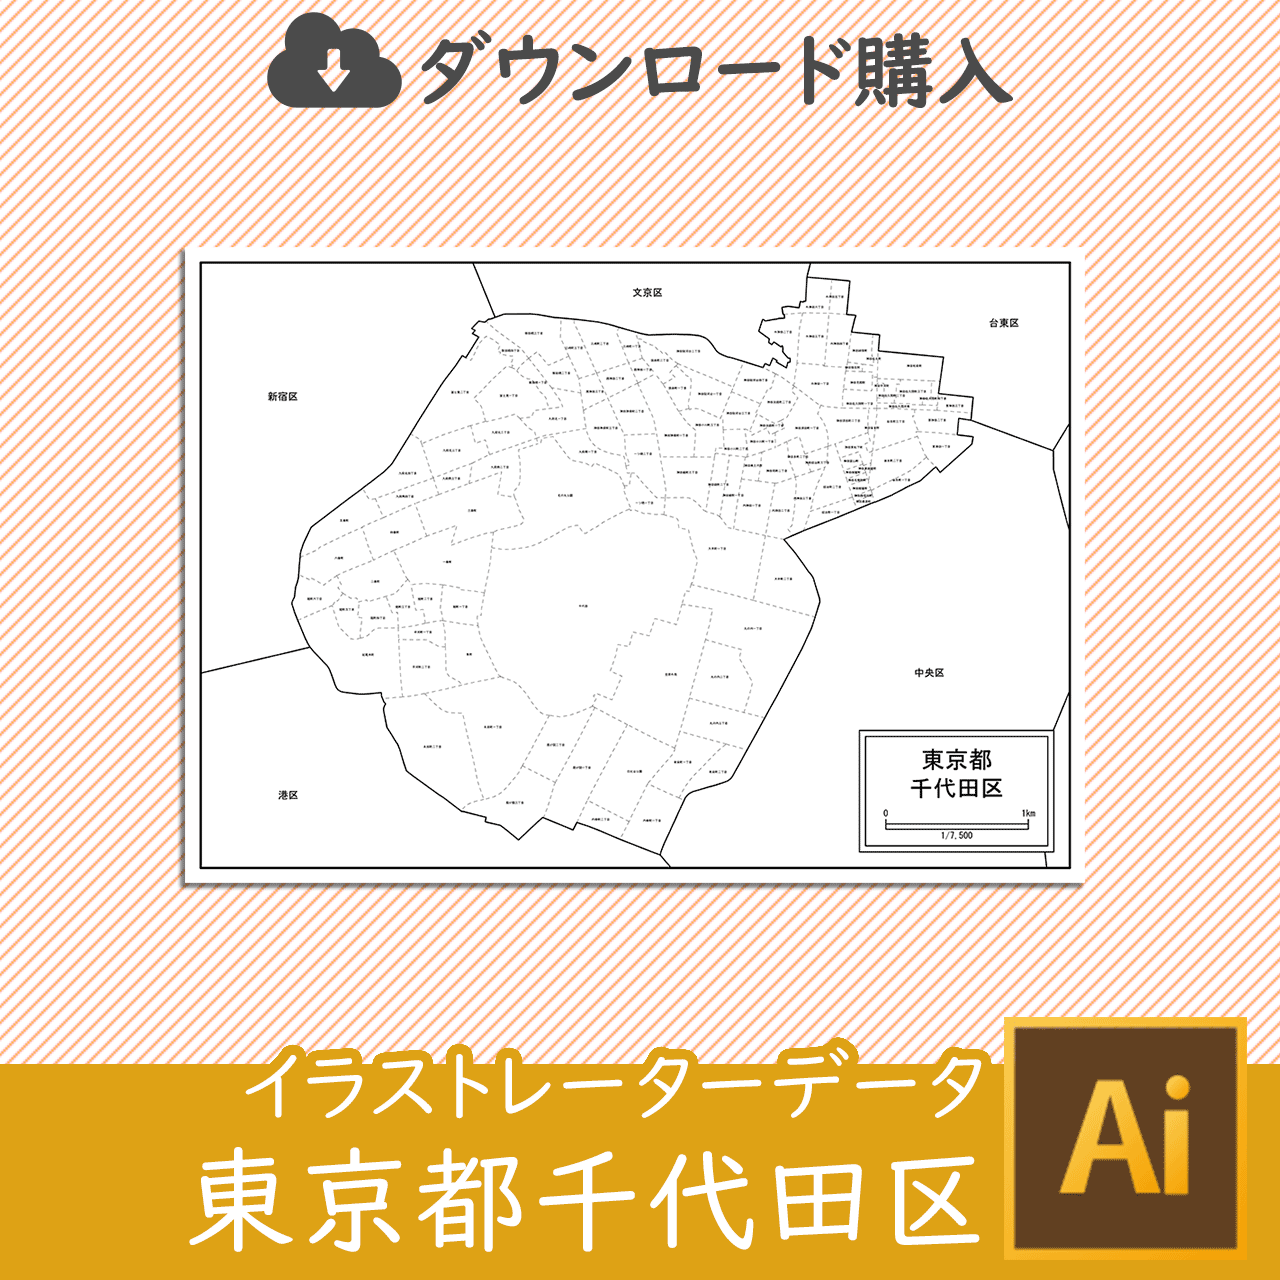 千代田区の白地図のサムネイル画像